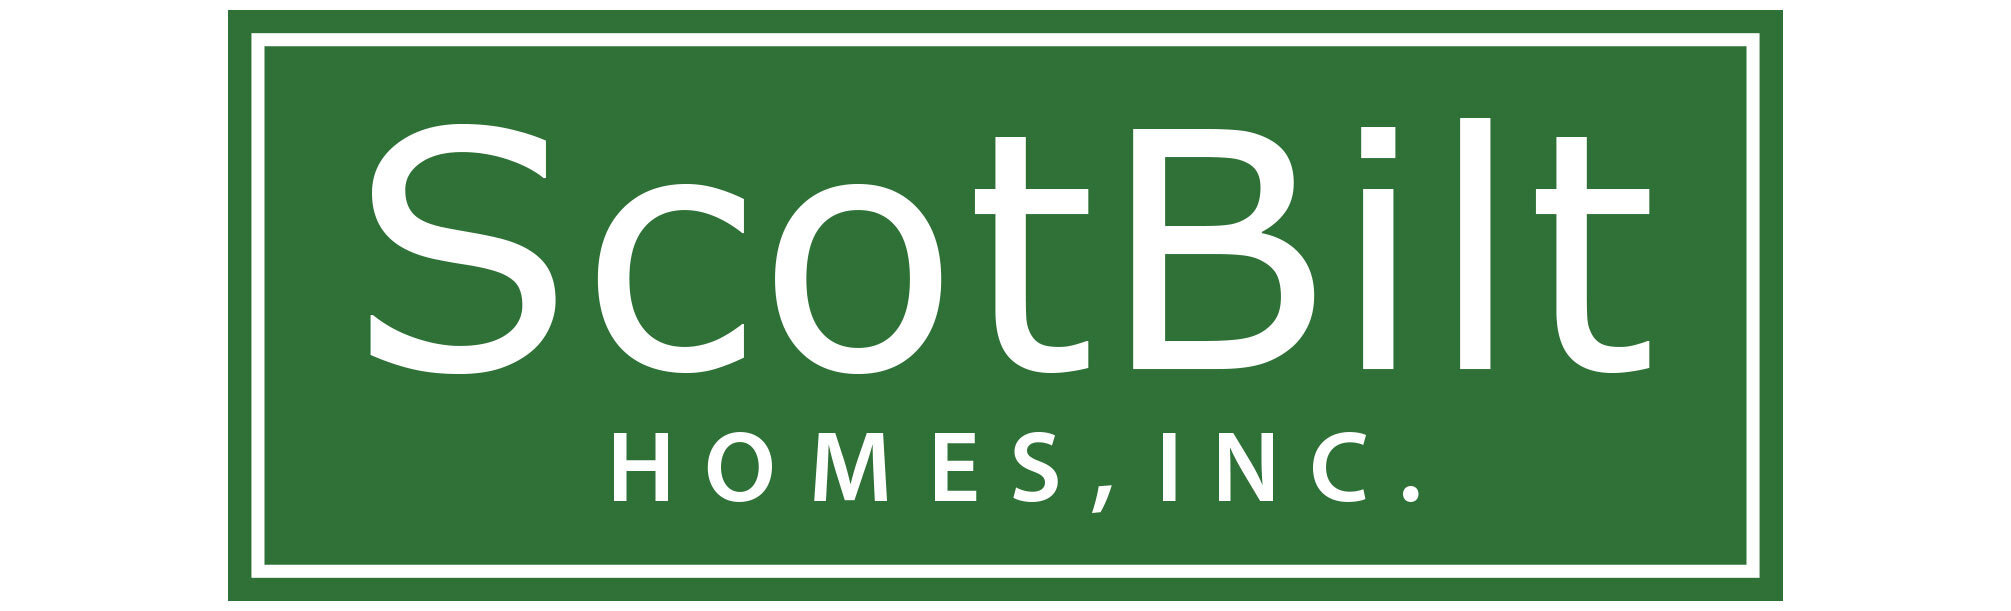 Scotbilt Homes